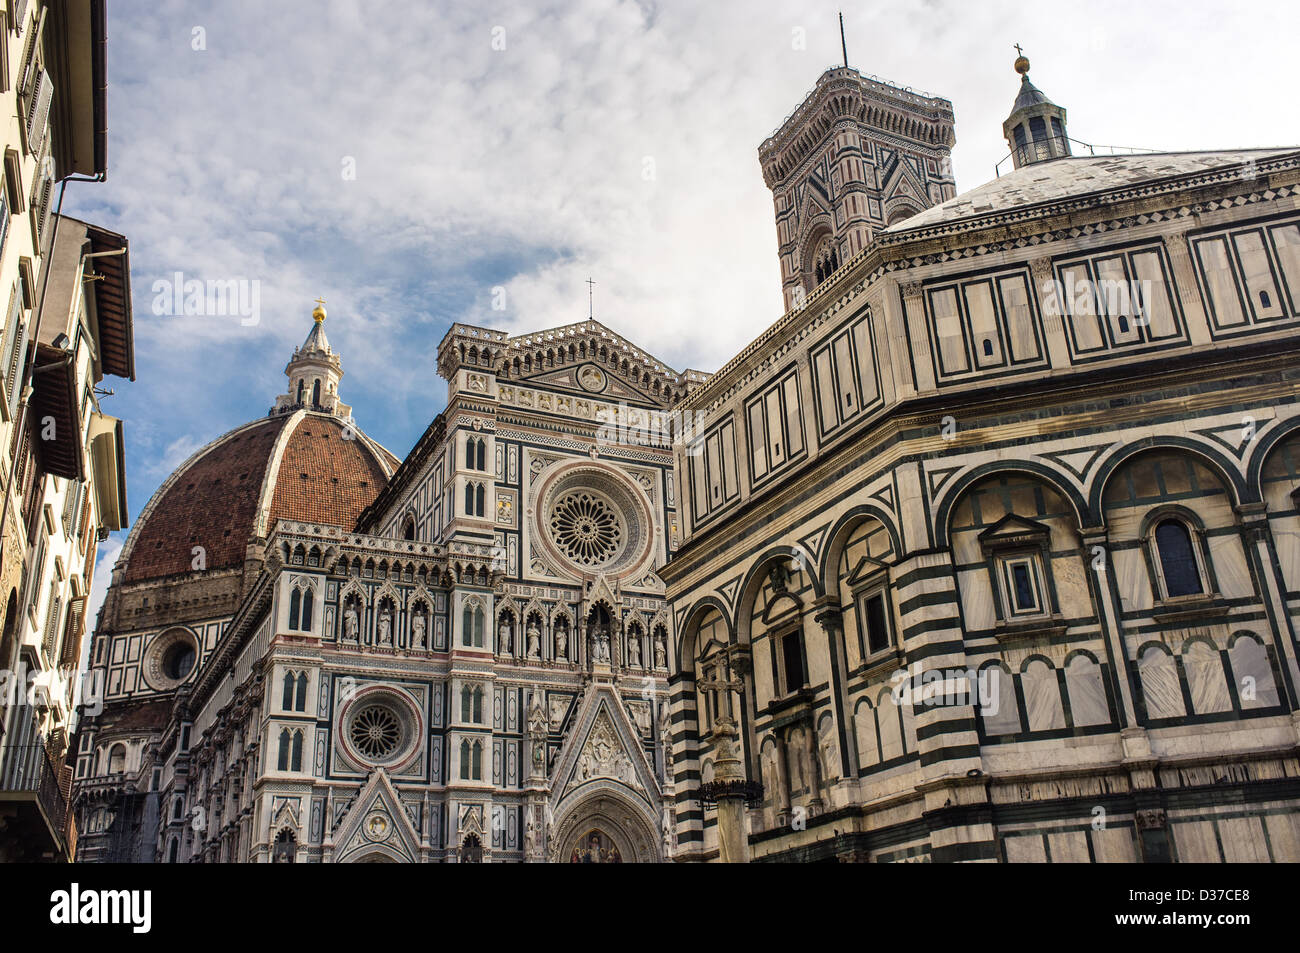 The Basilica di Santa Maria del Fiore, or Duomo, in Florence, Italy Stock Photo